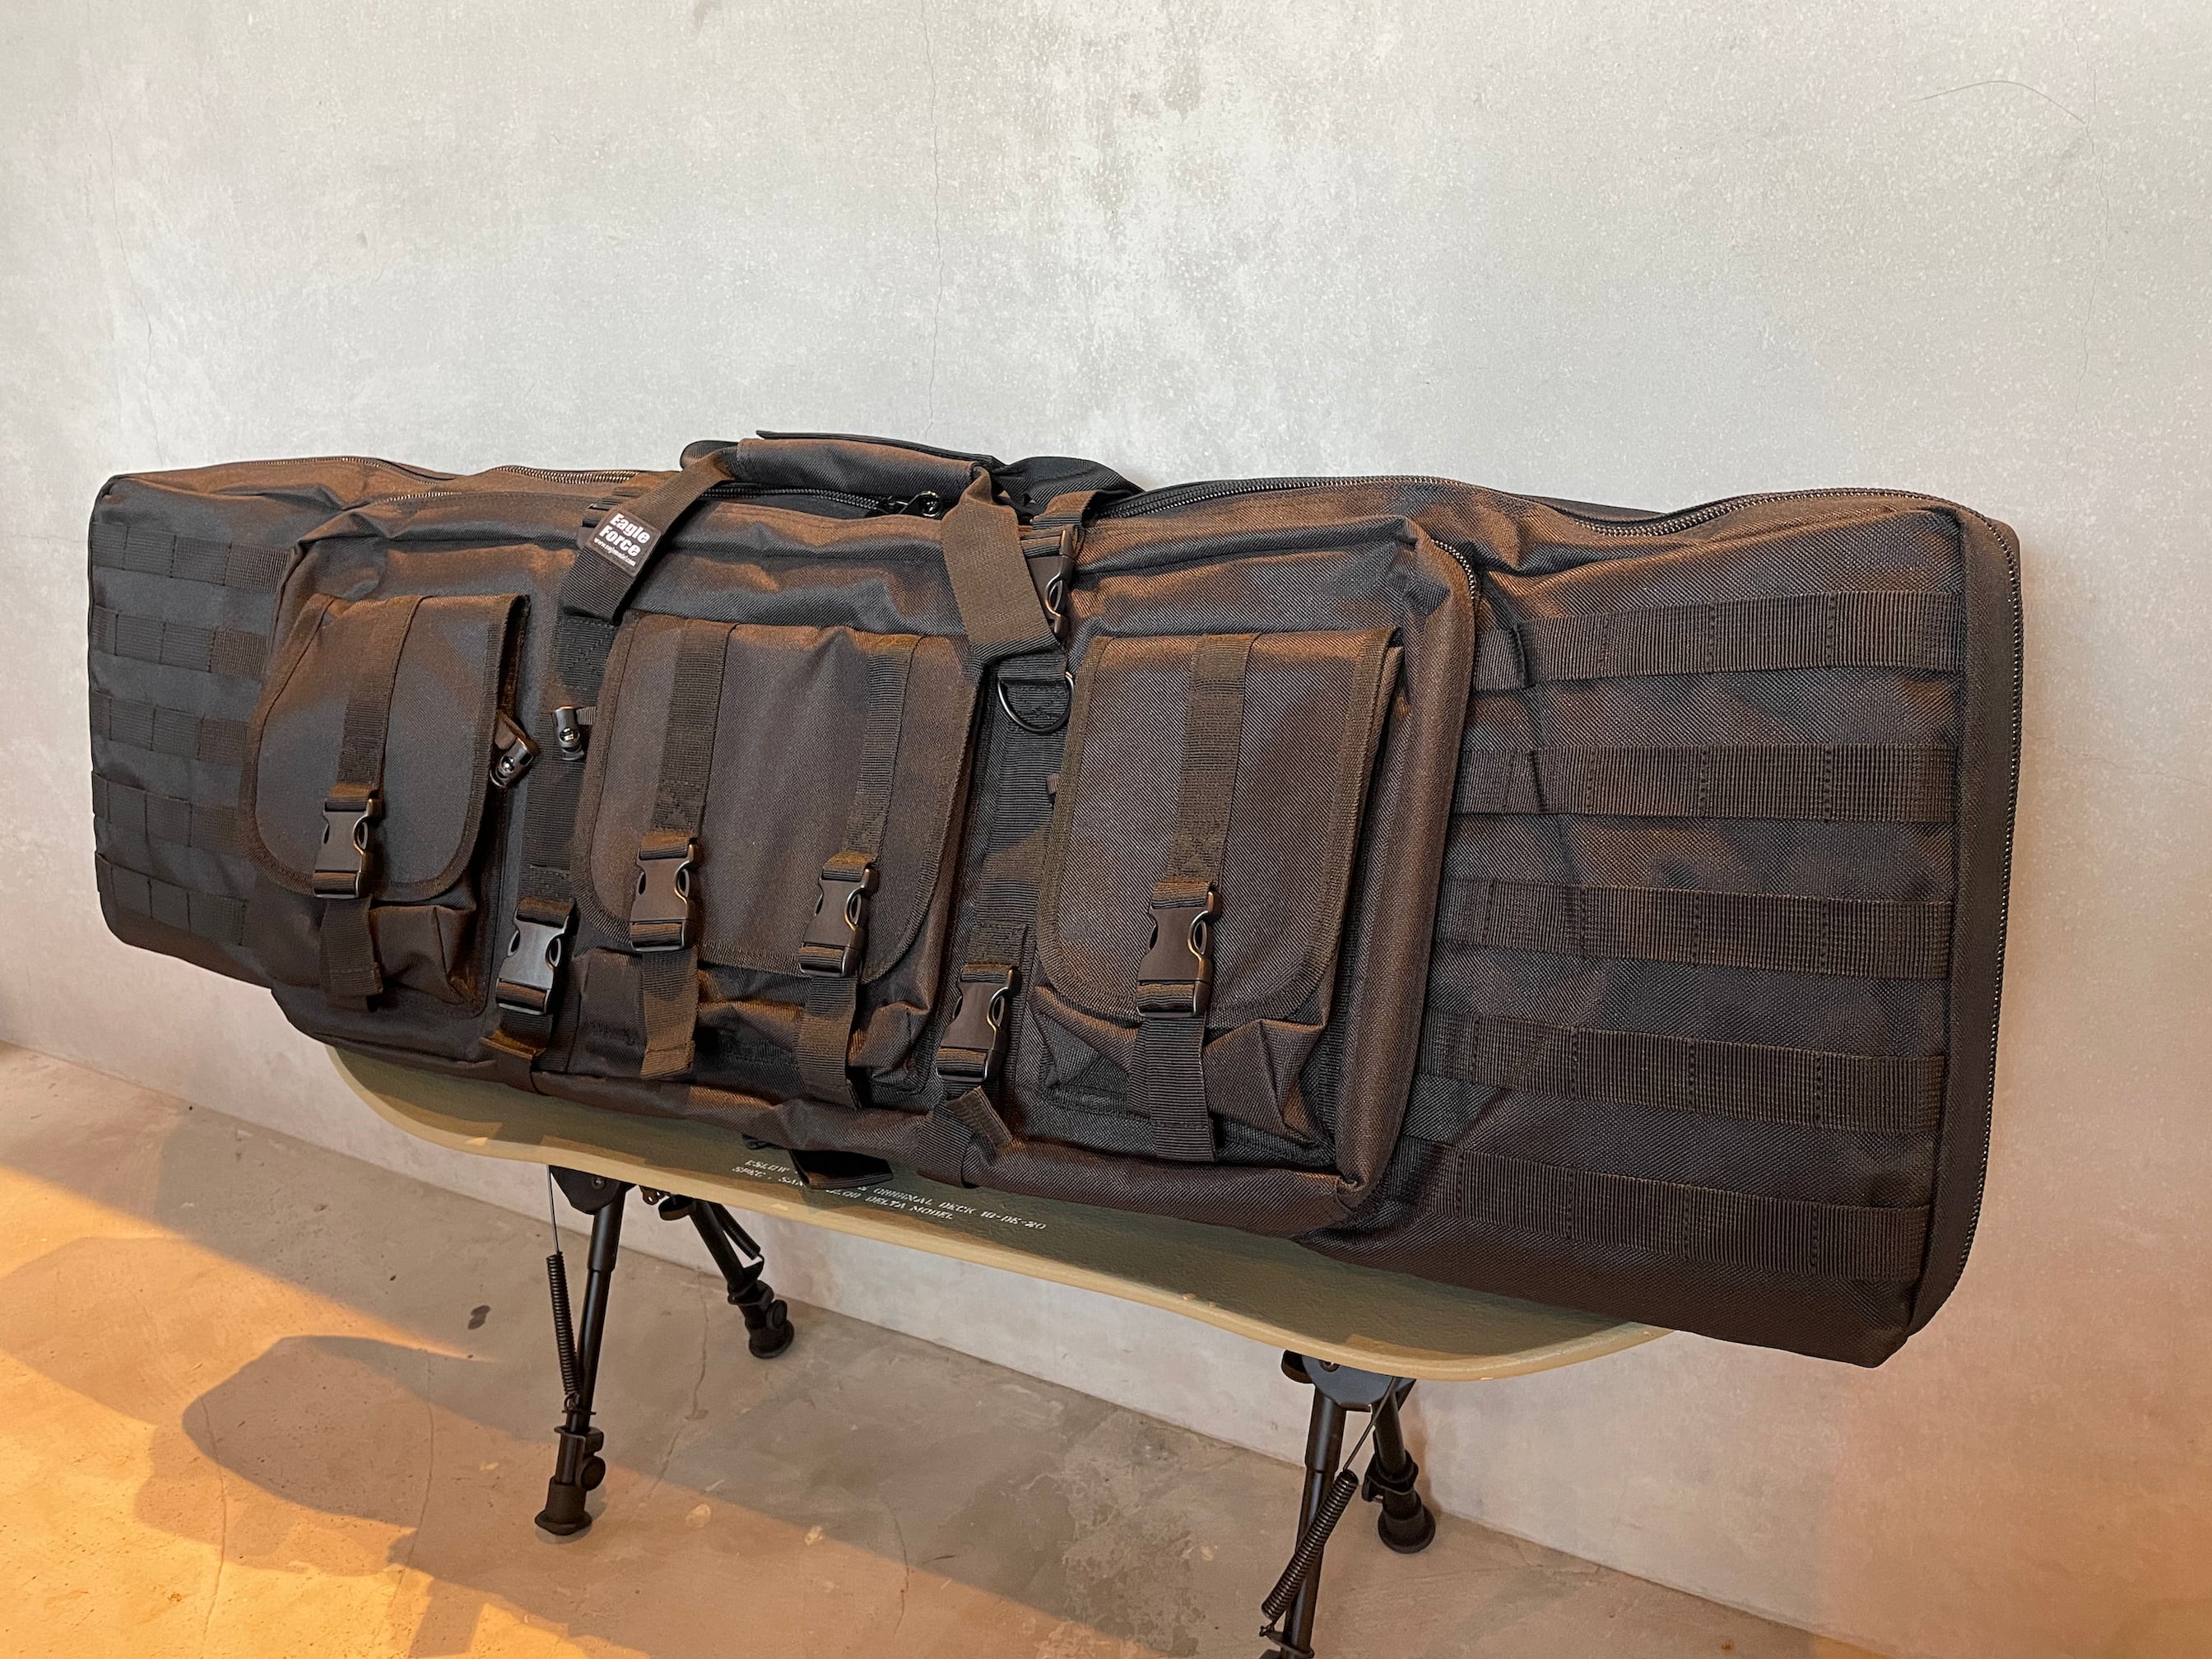 Carrying　Gun　L　ガンケース-　EagleForce　Bag